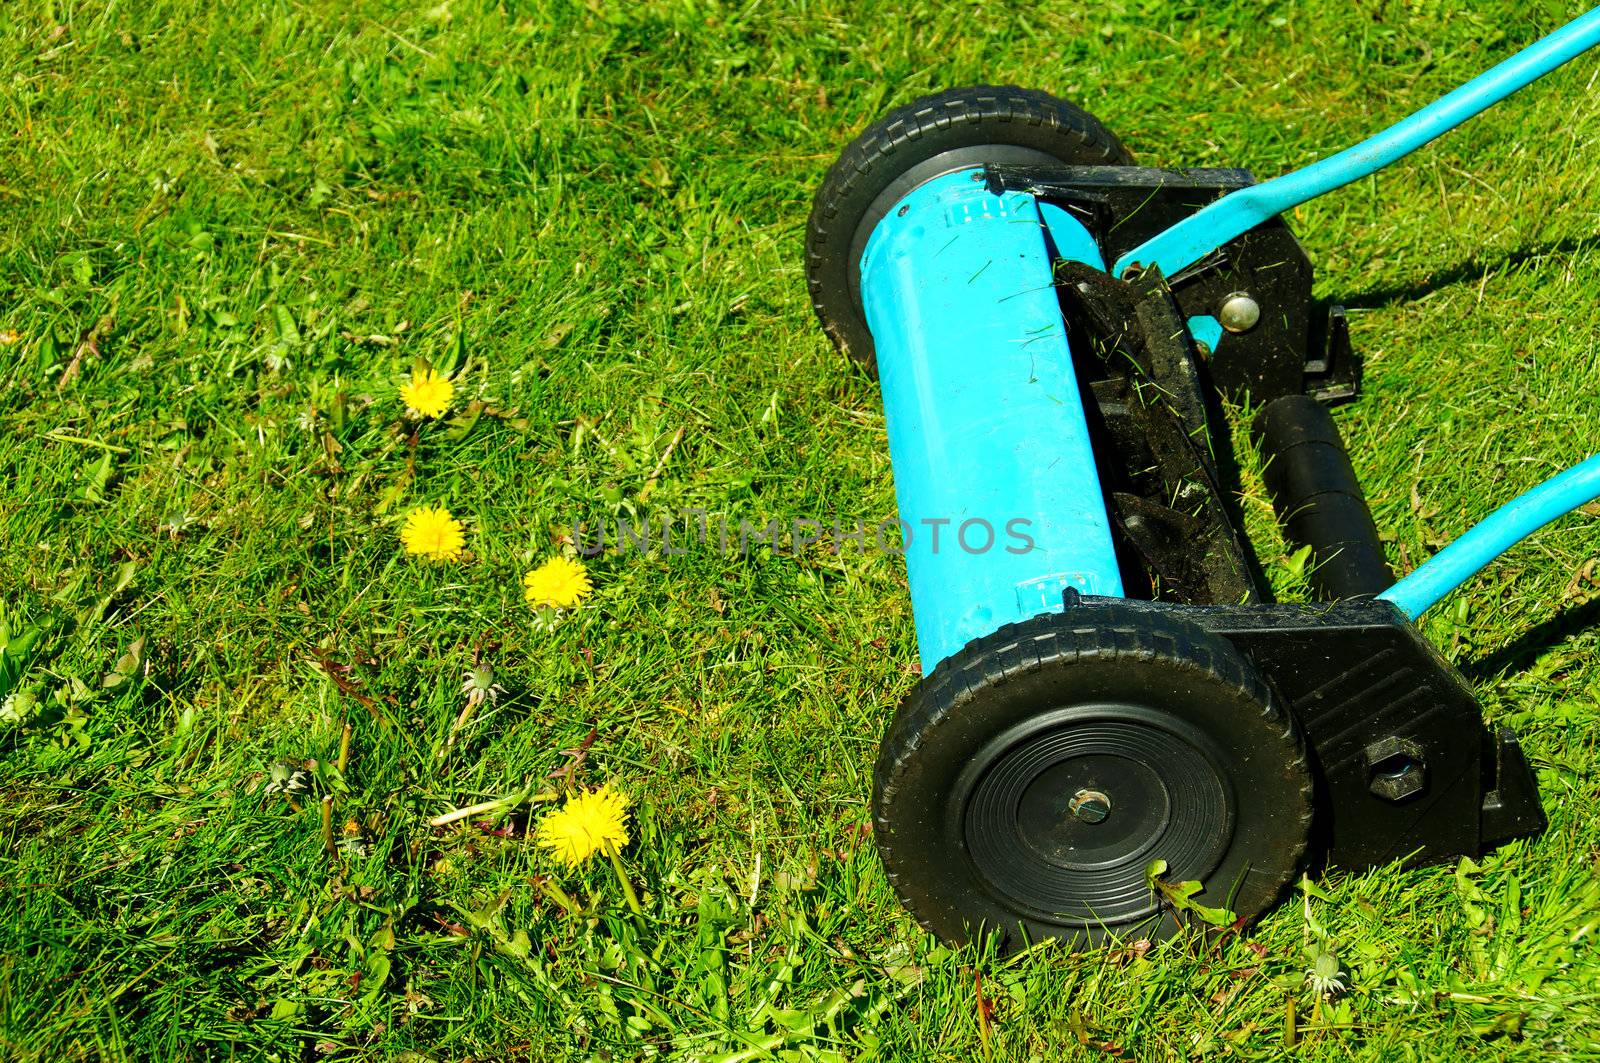 Manual lawn mower by GryT